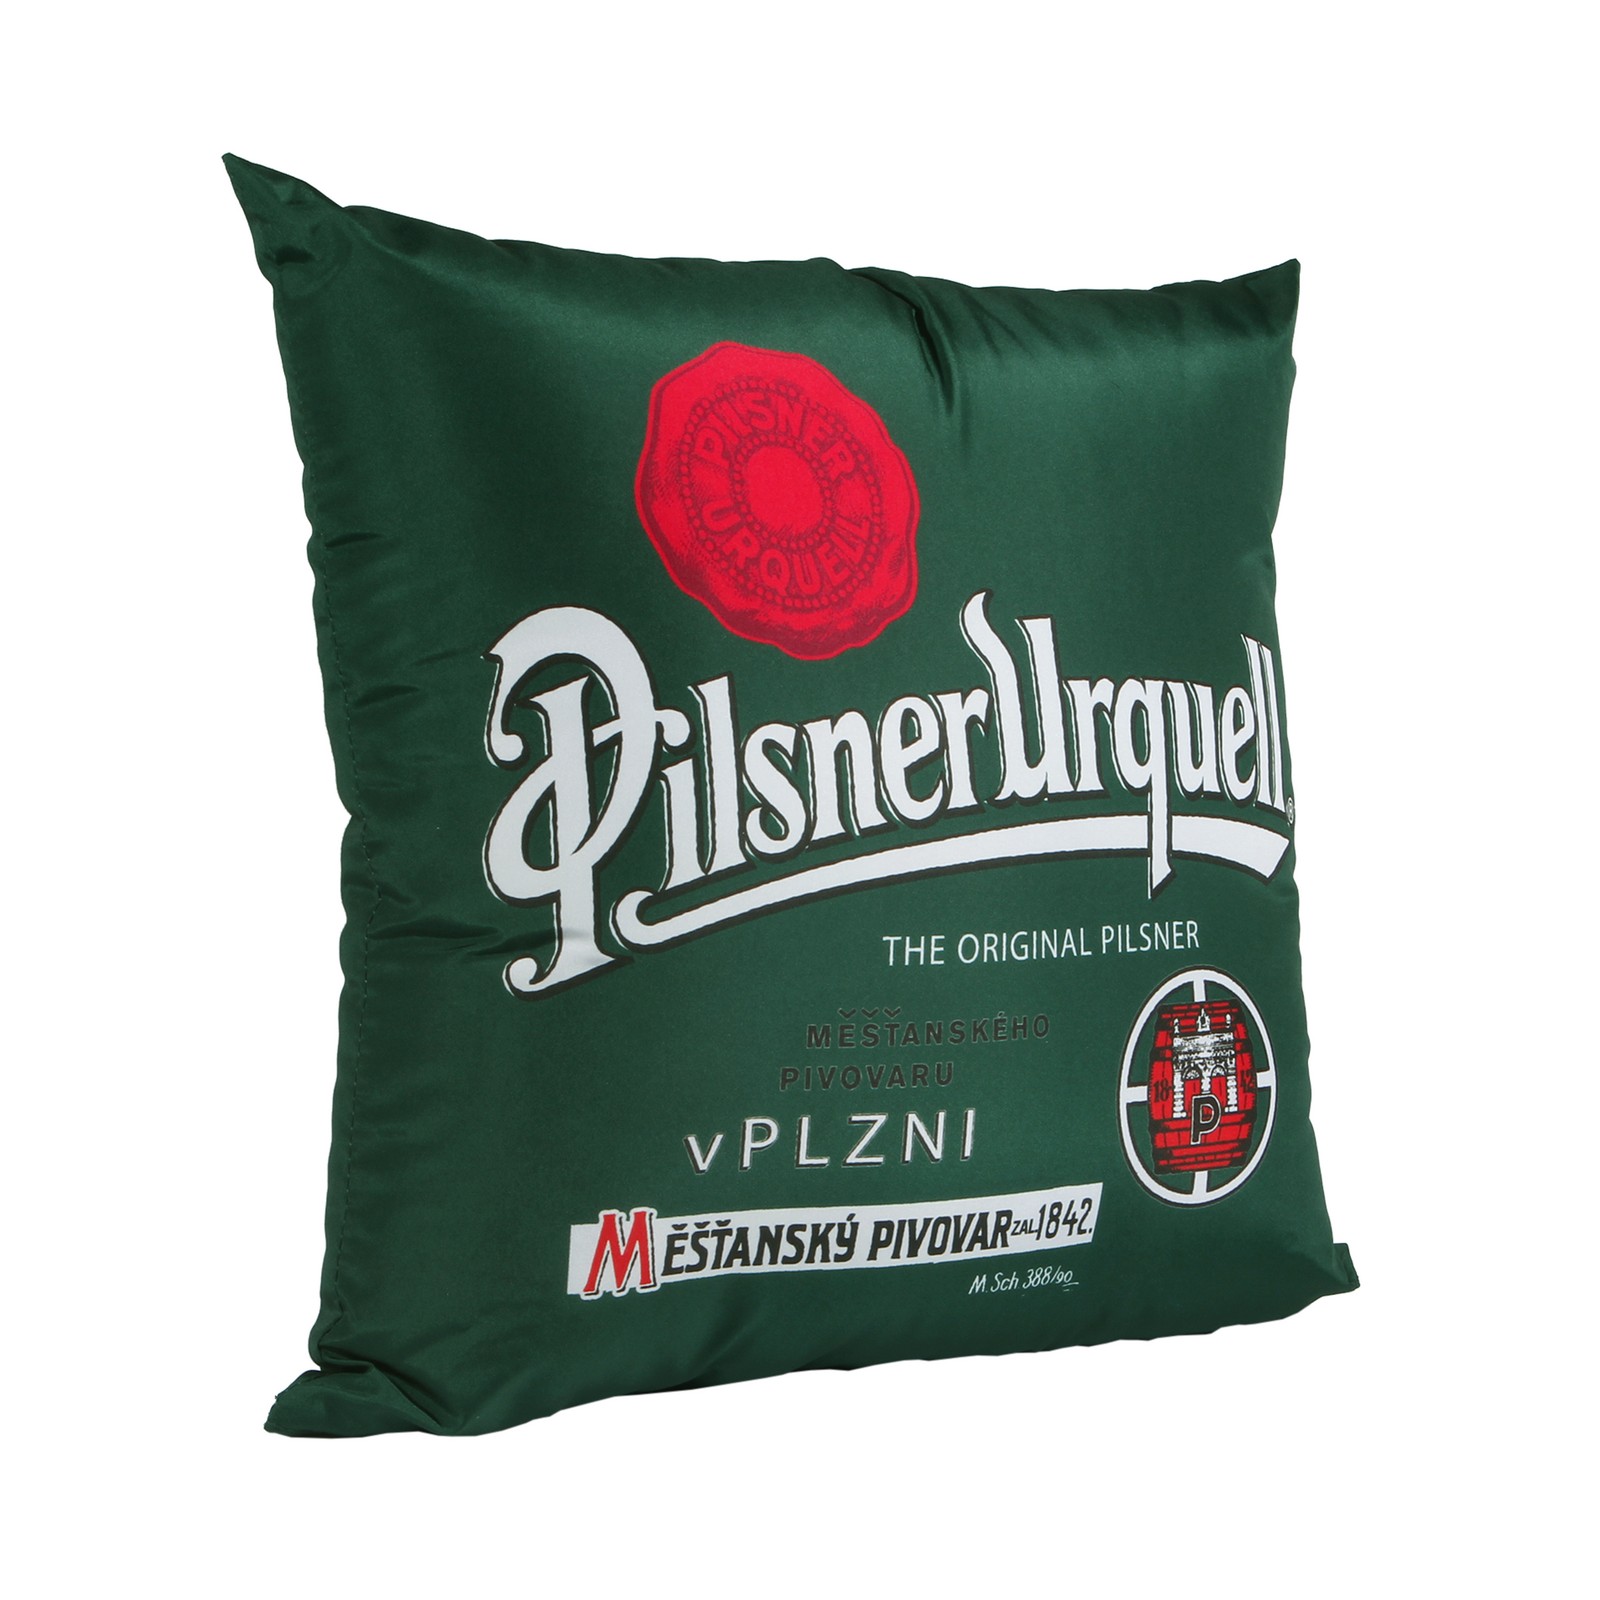 Pillow Pilsner Urquell